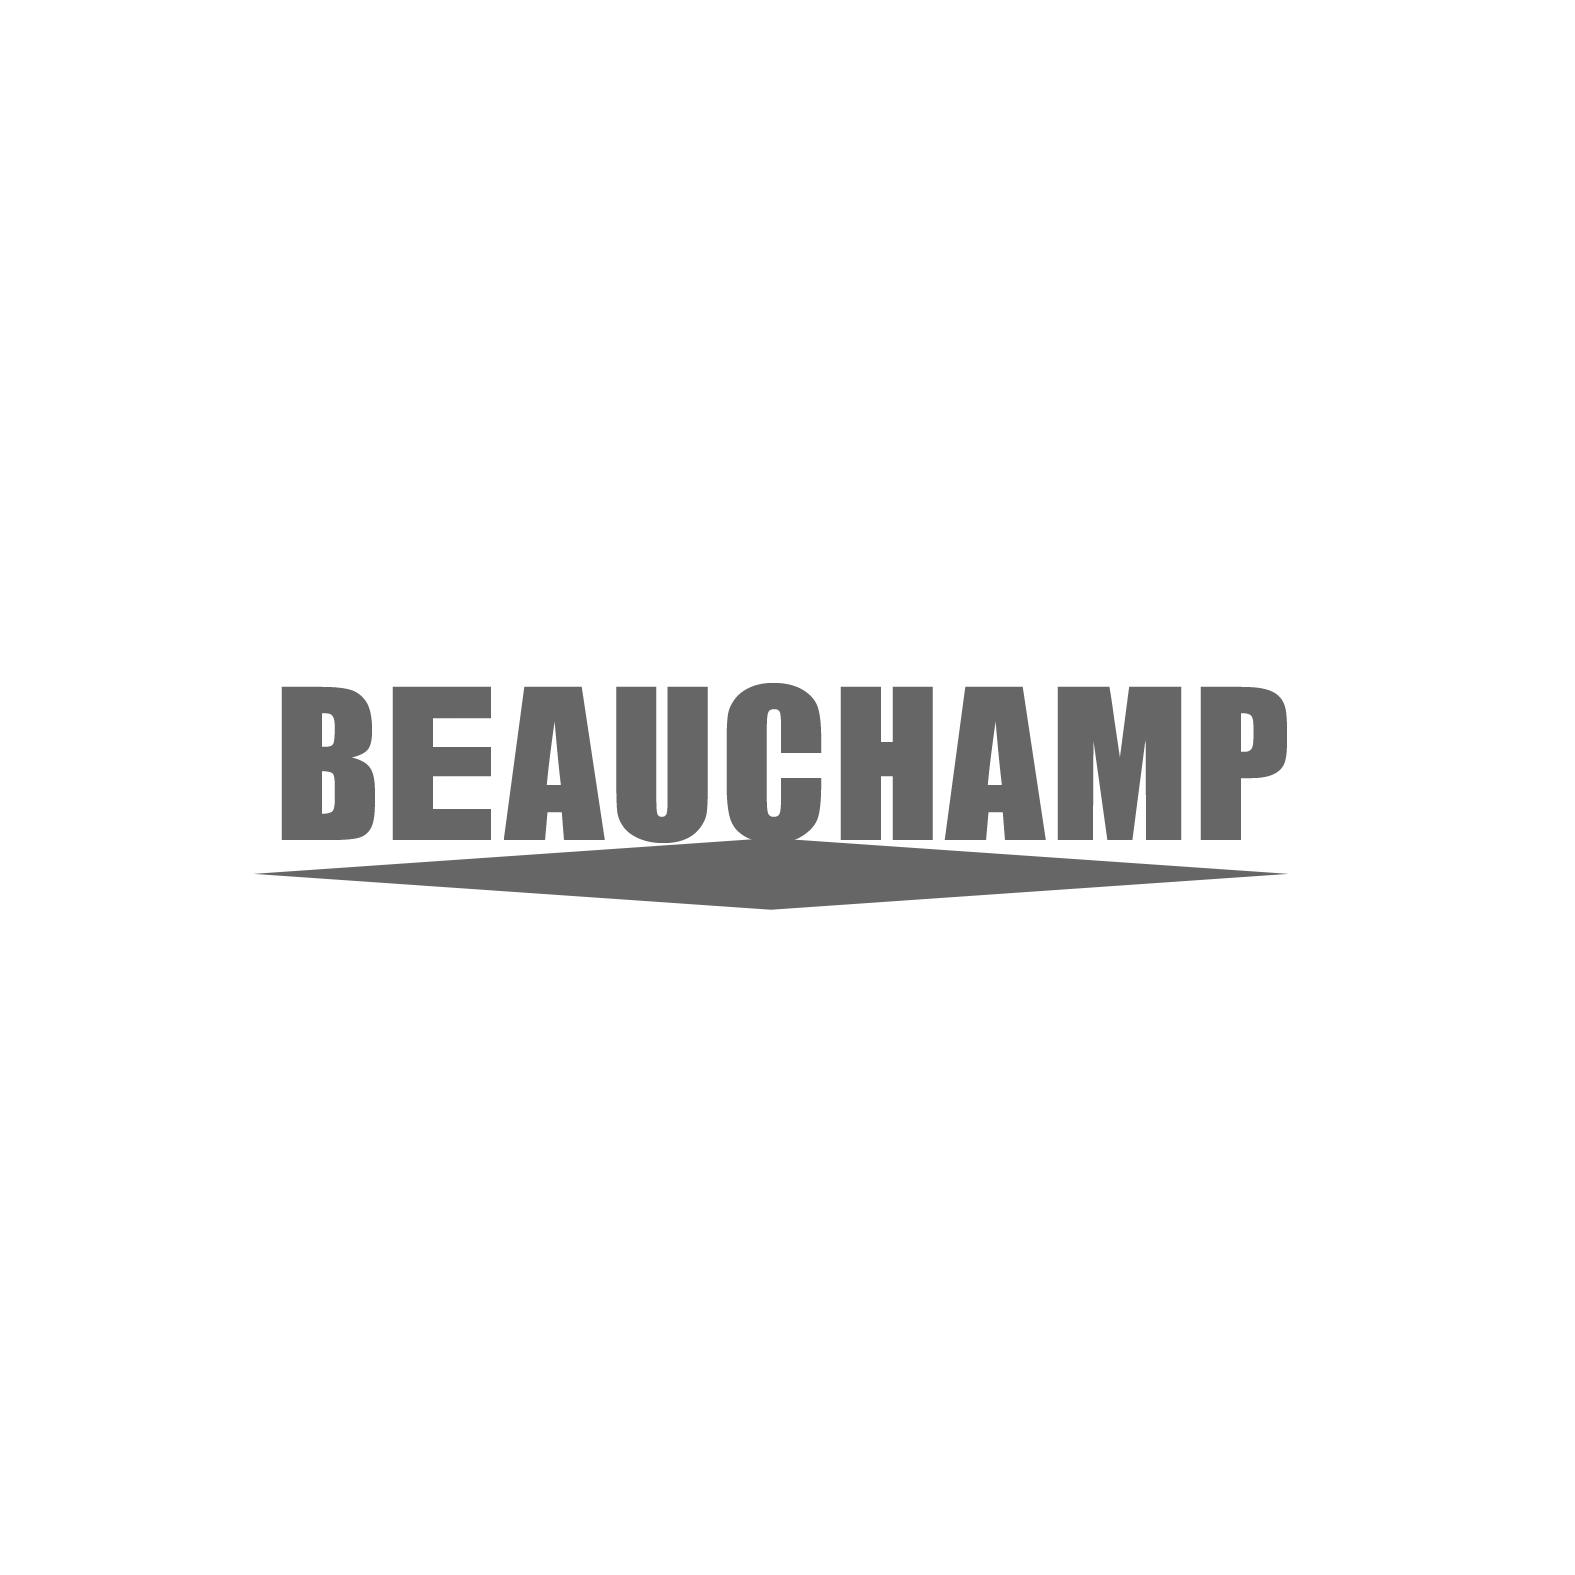 12类-运输装置BEAUCHAMP商标转让